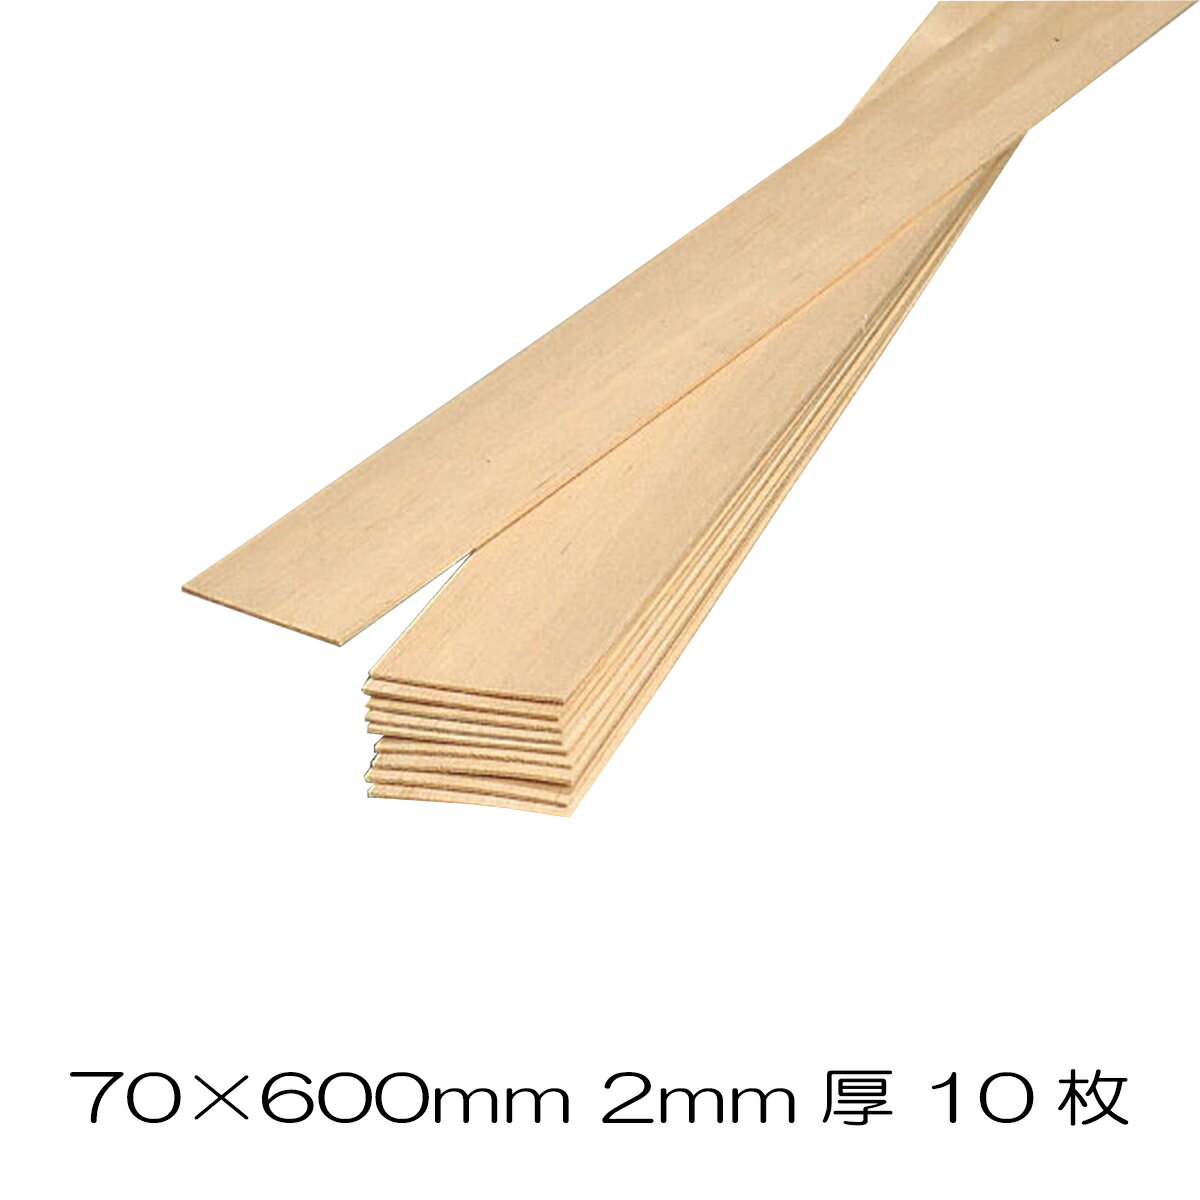 バルサ板材 70×600mm 10枚組 2mm 【 工作 木材 木工 棒 バルサ バルサ板 板材 木製 木 木の板 角材 】